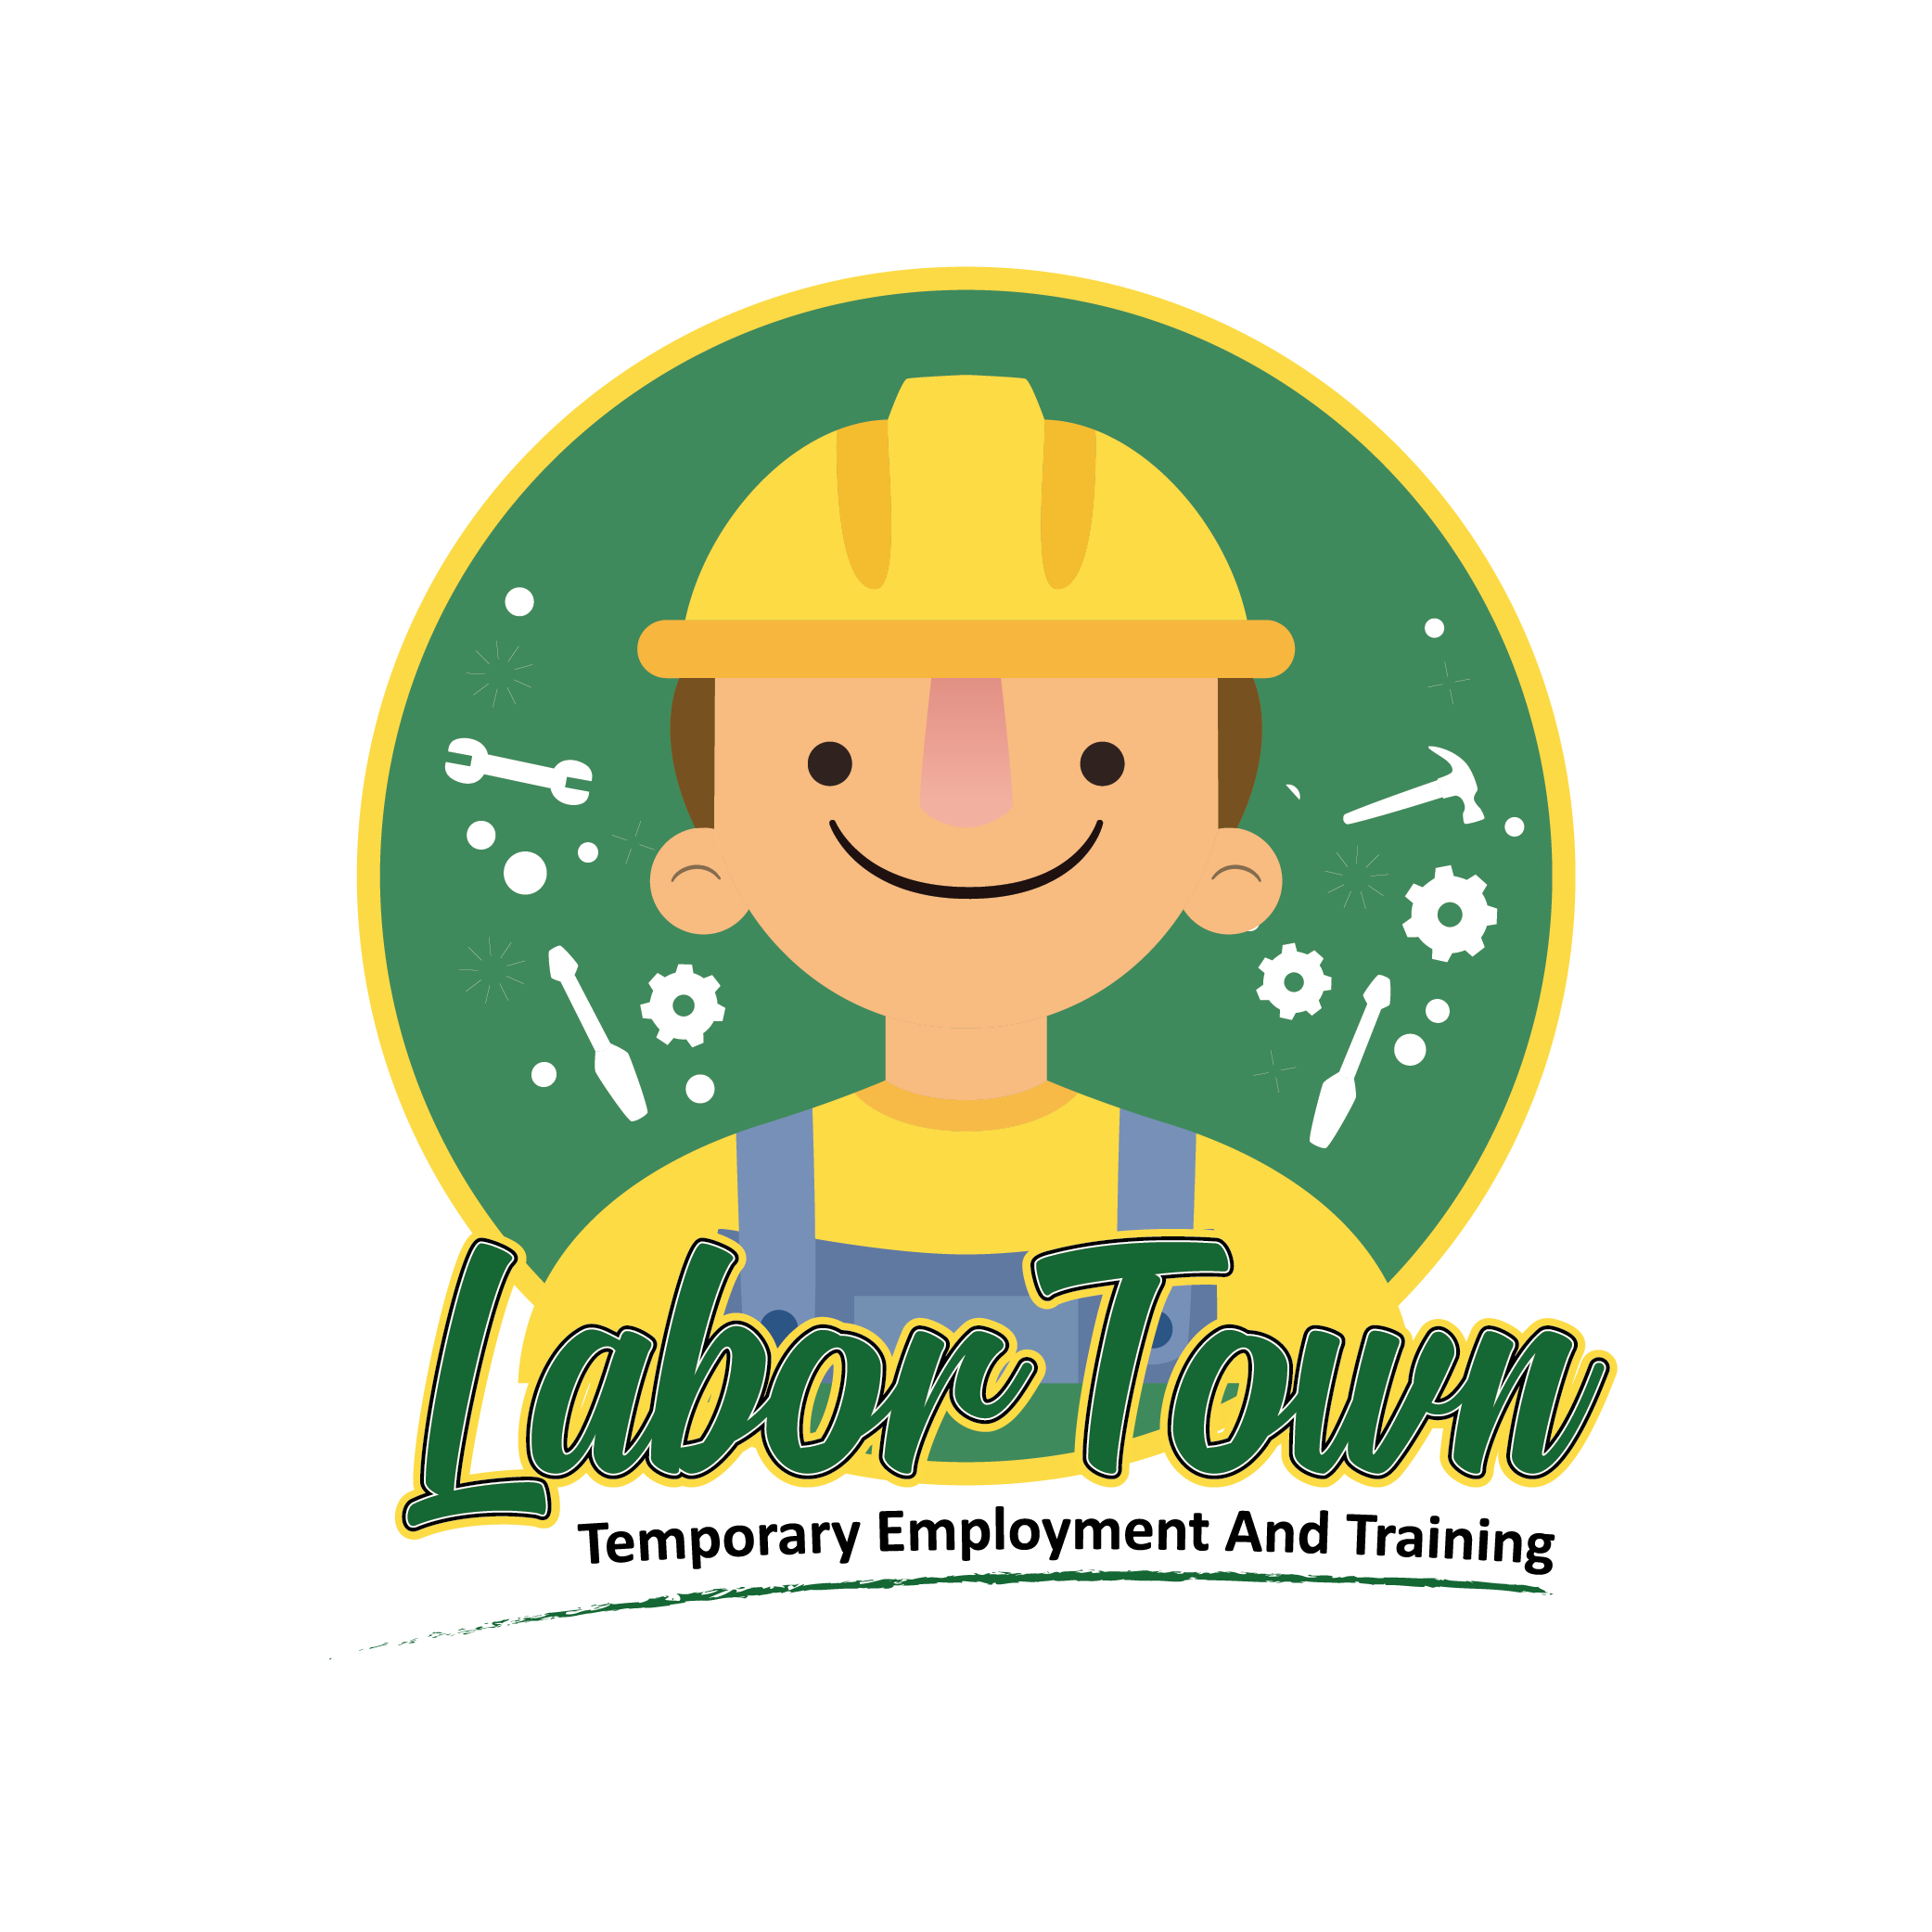 Labor Town Online LLC        